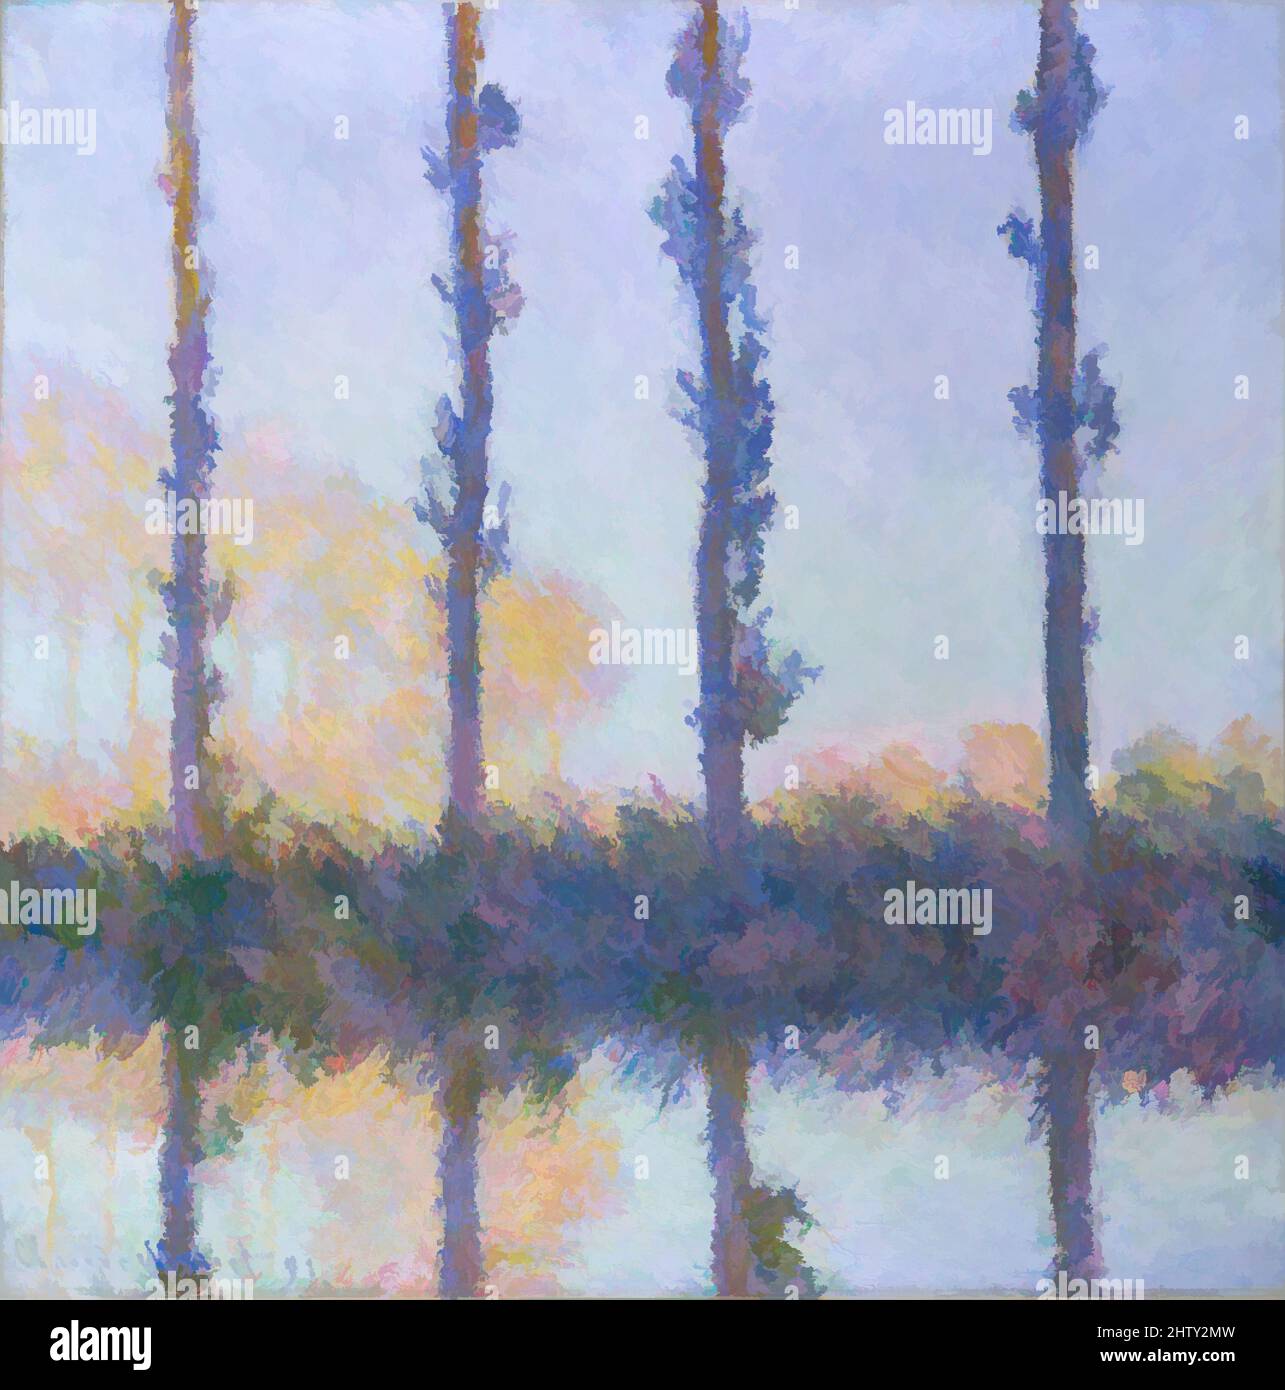 Art inspiré par les quatre arbres, 1891, huile sur toile, 32 1/4 x 32 1/8 po. (81,9 x 81,6 cm), peintures, Claude Monet (français, Paris 1840–1926 Giverny), durant l'été et l'automne 1891, Monet a peint une série de vues de peupliers le long de l'Epte, à Giverny. L'achèvement de la série a été, les œuvres classiques modernisées par Artotop avec un peu de modernité. Formes, couleur et valeur, impact visuel accrocheur sur l'art émotions par la liberté d'œuvres d'art d'une manière contemporaine. Un message intemporel qui cherche une nouvelle direction créative. Artistes qui se tournent vers le support numérique et créent le NFT Artotop Banque D'Images